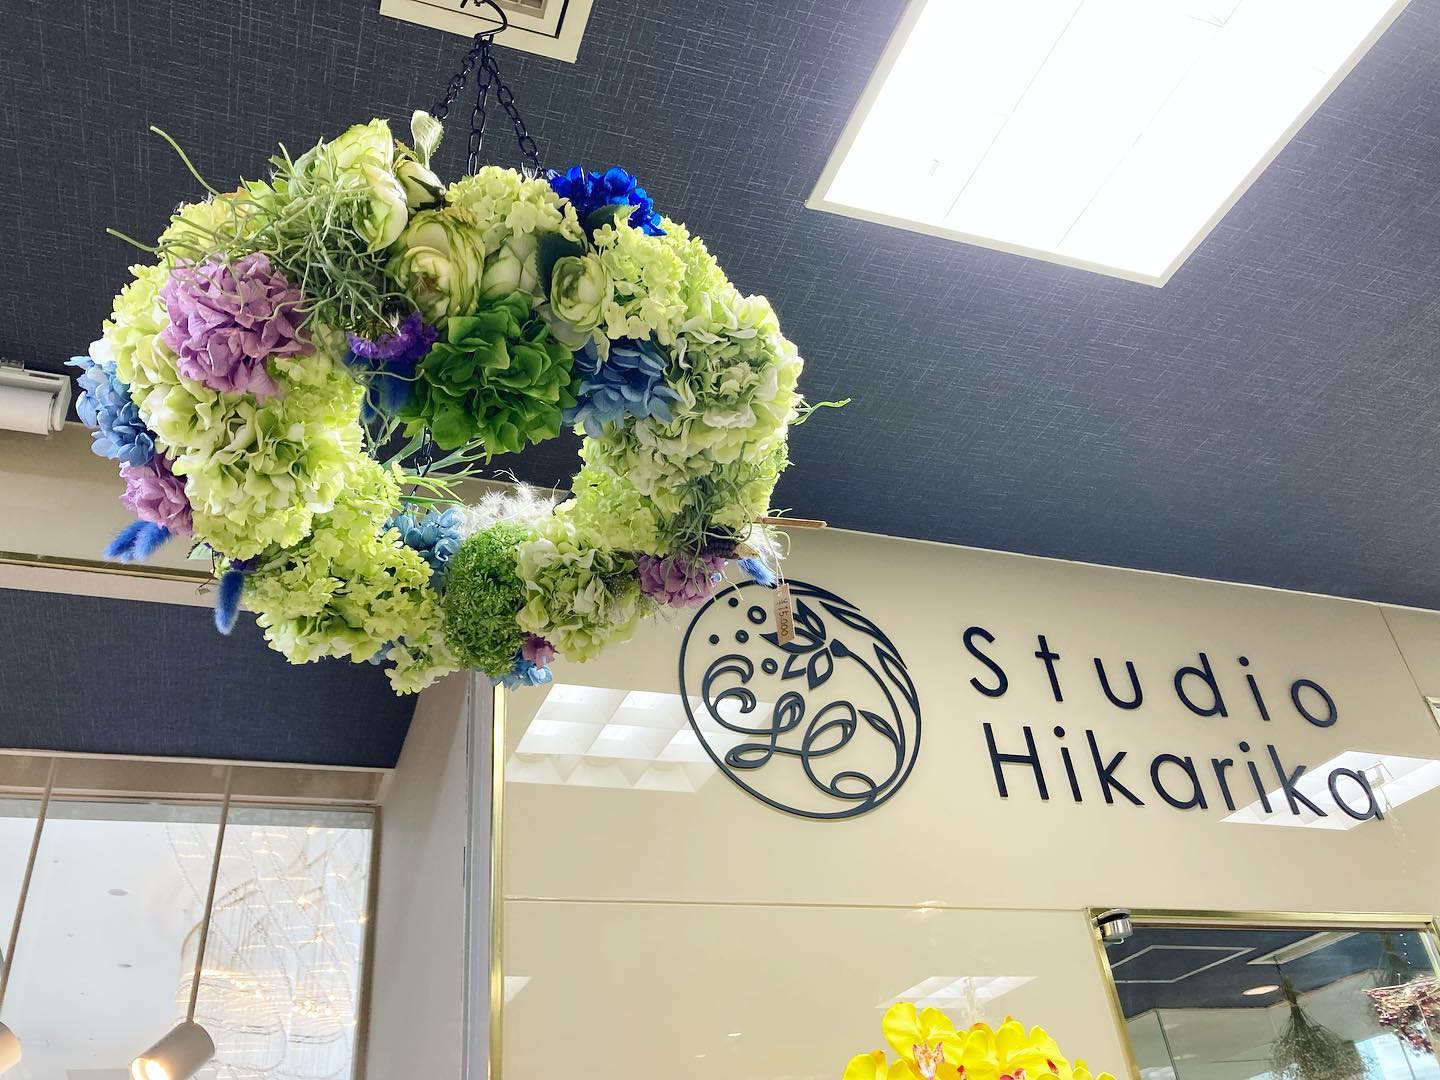 岐阜グランド店です。３月に入り　暖かい日も少しずつ増えてきましたね️本日は、人気のフライングフラワーのご紹介です。紫陽花がふんだんに使用されていてとても可愛らしいです気になる方は是非一度グランド店にお越し下さい。DMもお待ちしております。#フライングフラワー #フライングフラワーリース #紫陽花#プリザ#造花#hikarika